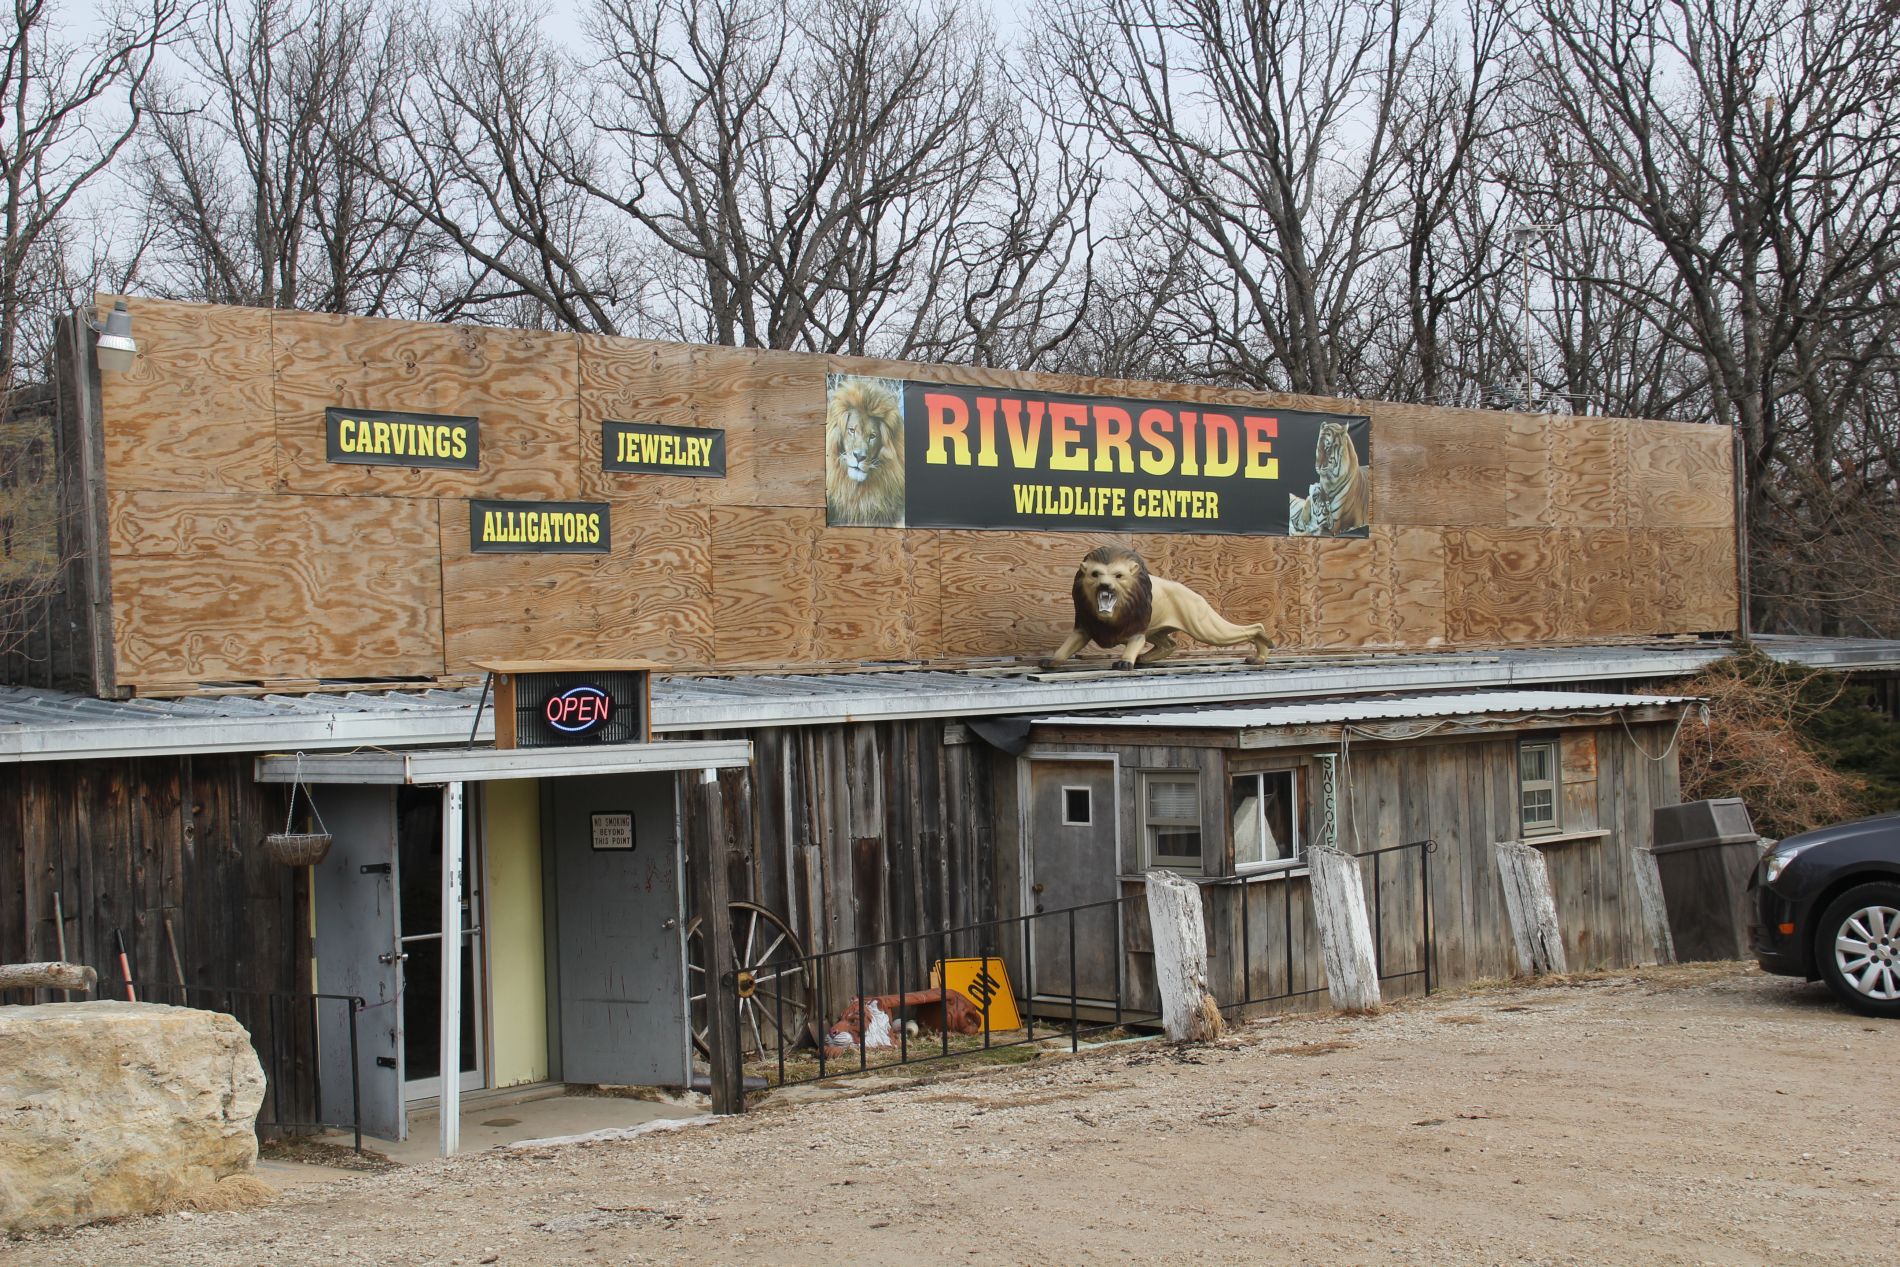 Riverside Wildlife Center in Stanton, Missouri